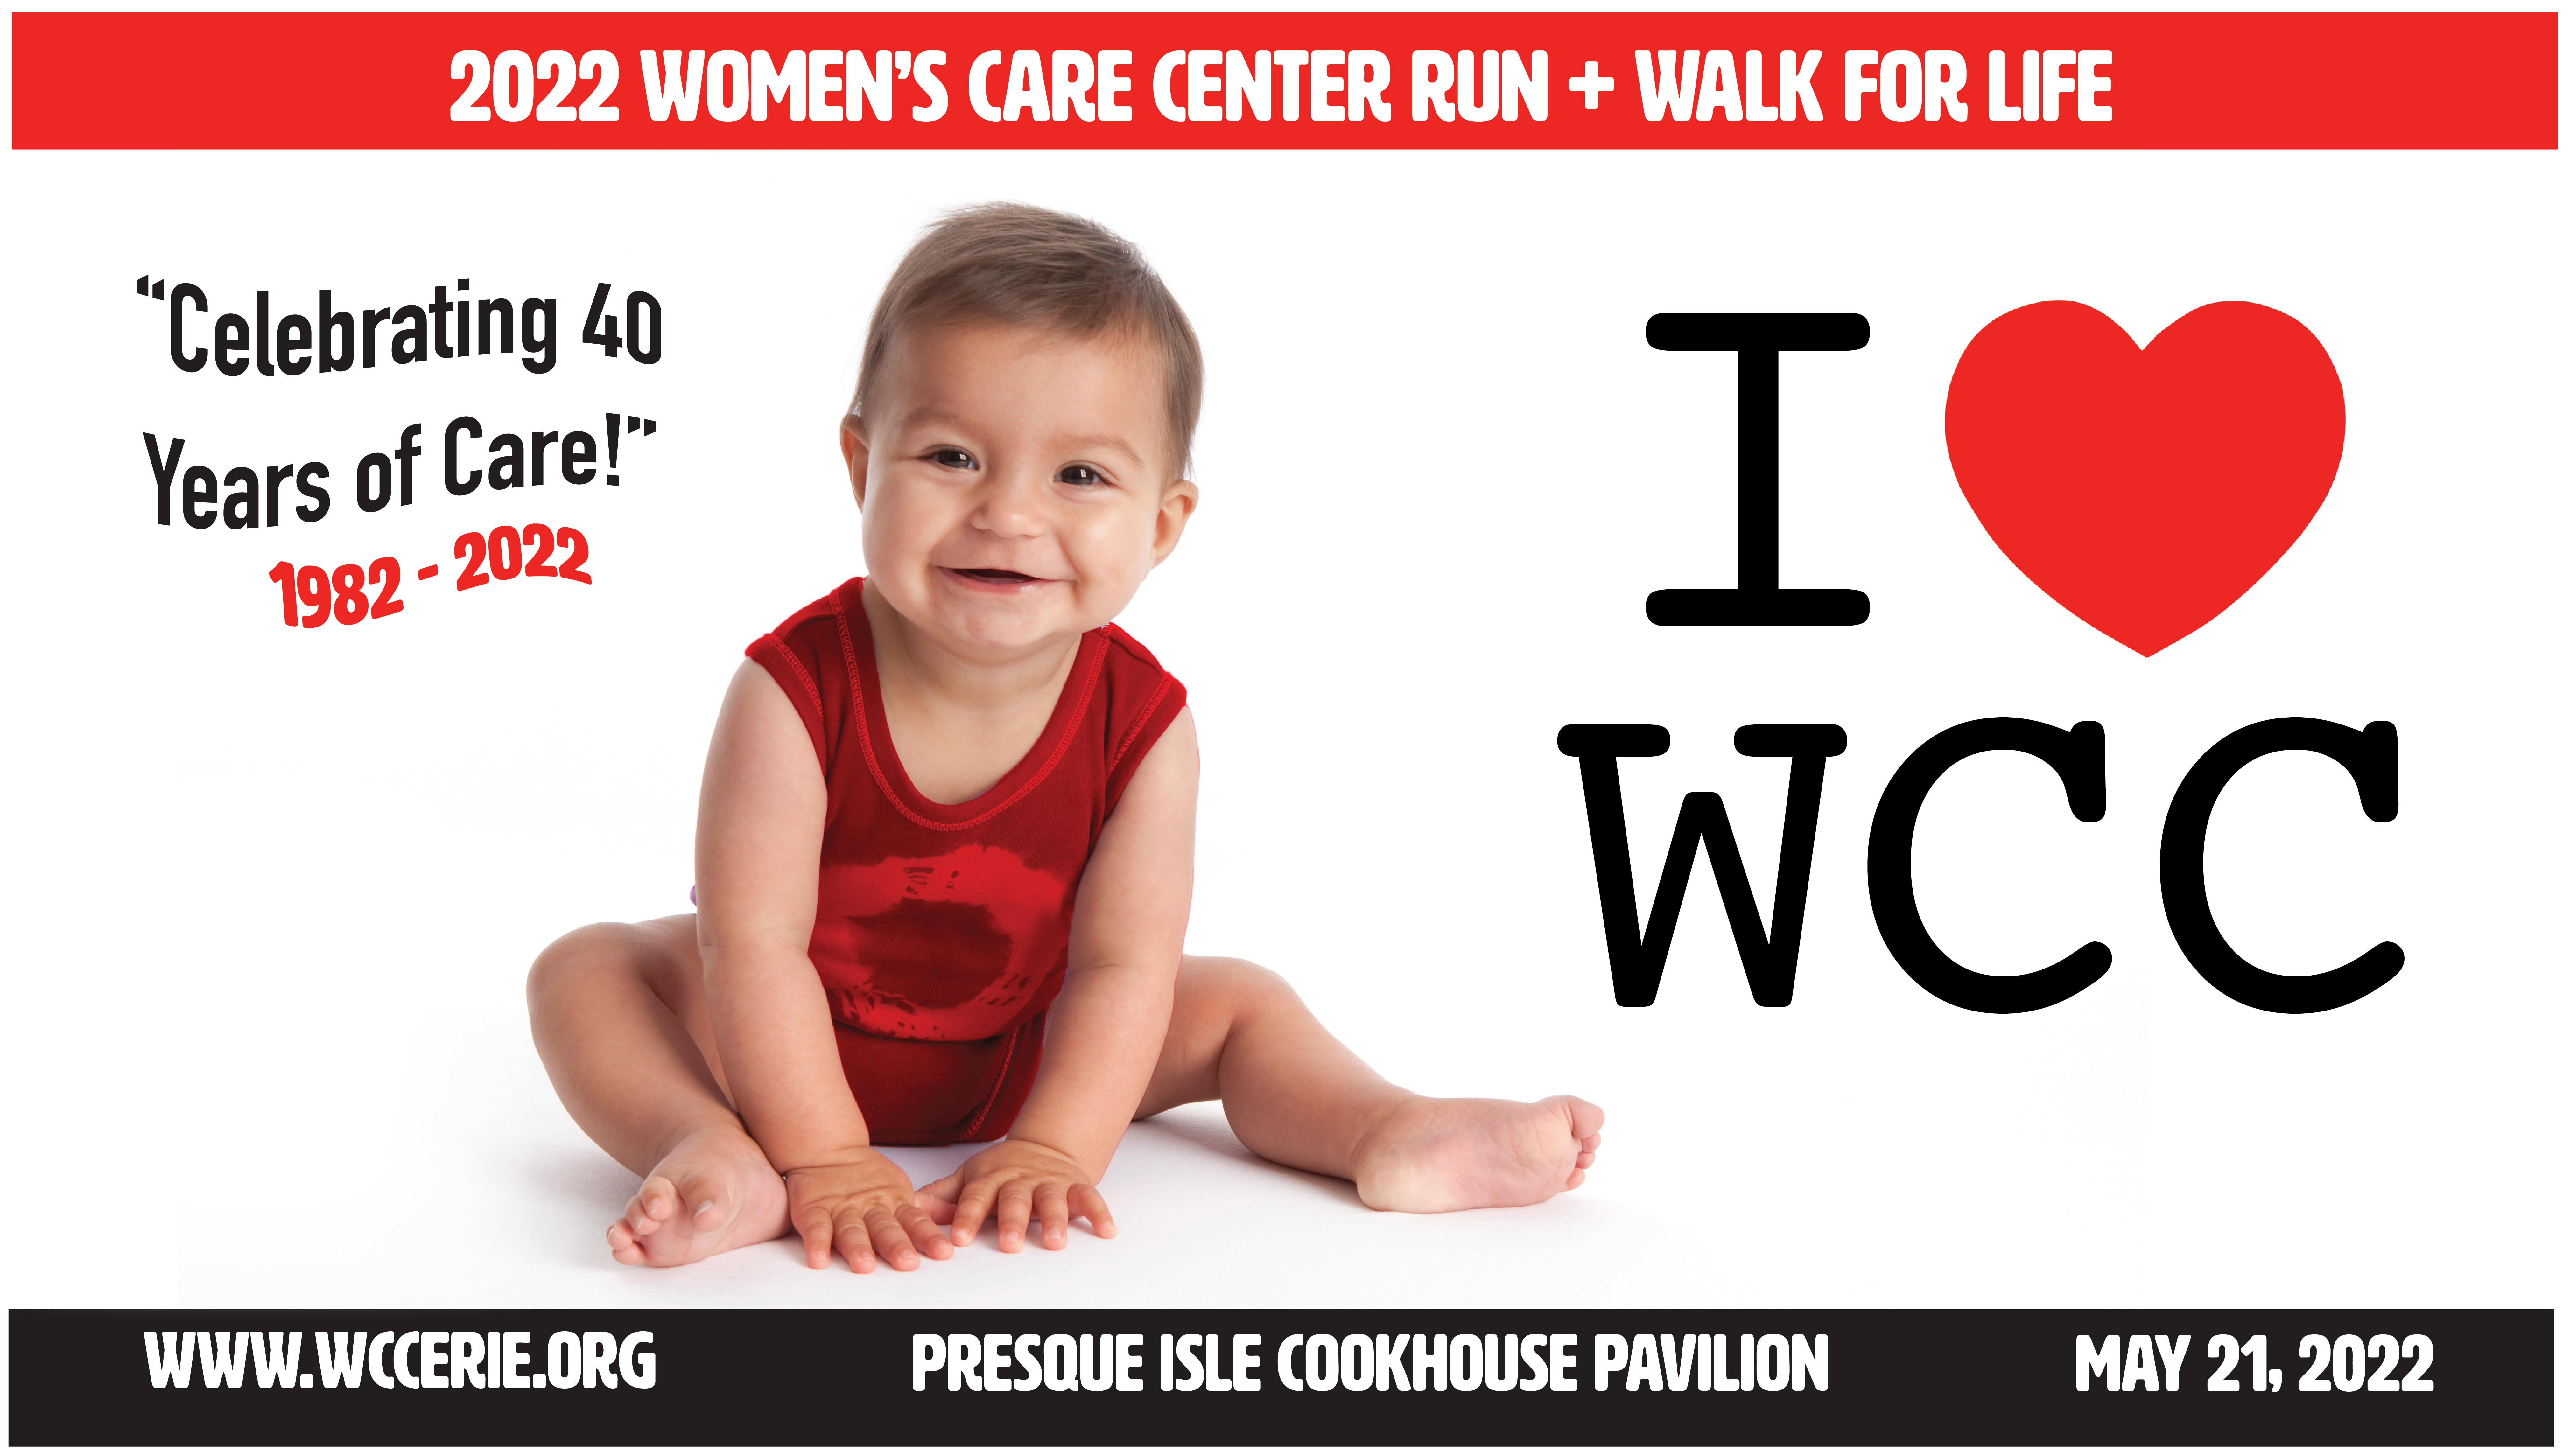 Women’s Care Center 5K Run + Walk for Life